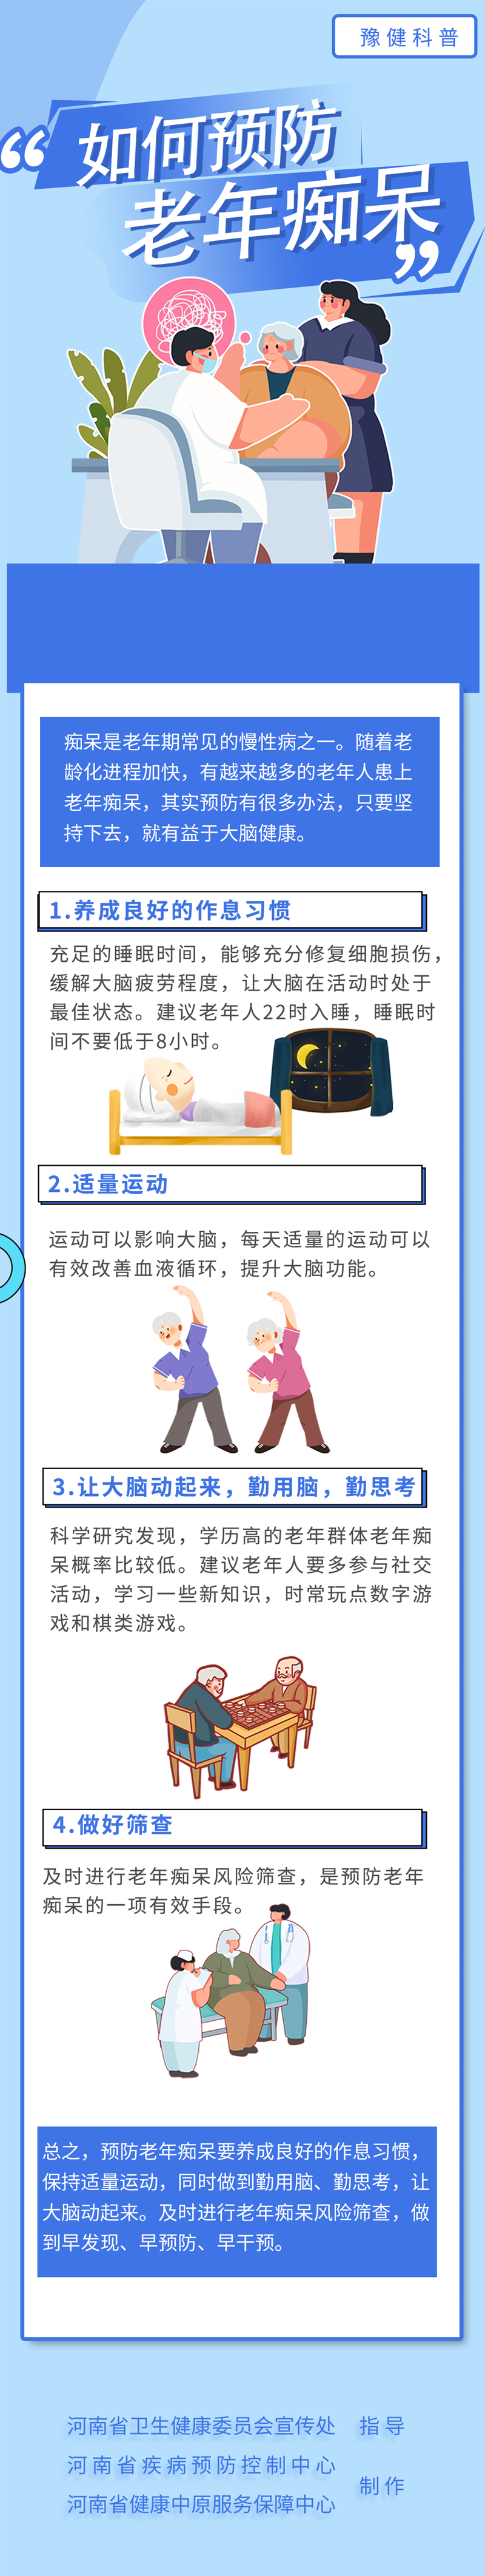 9.16中国脑健康日-如何预防老年痴呆.jpg